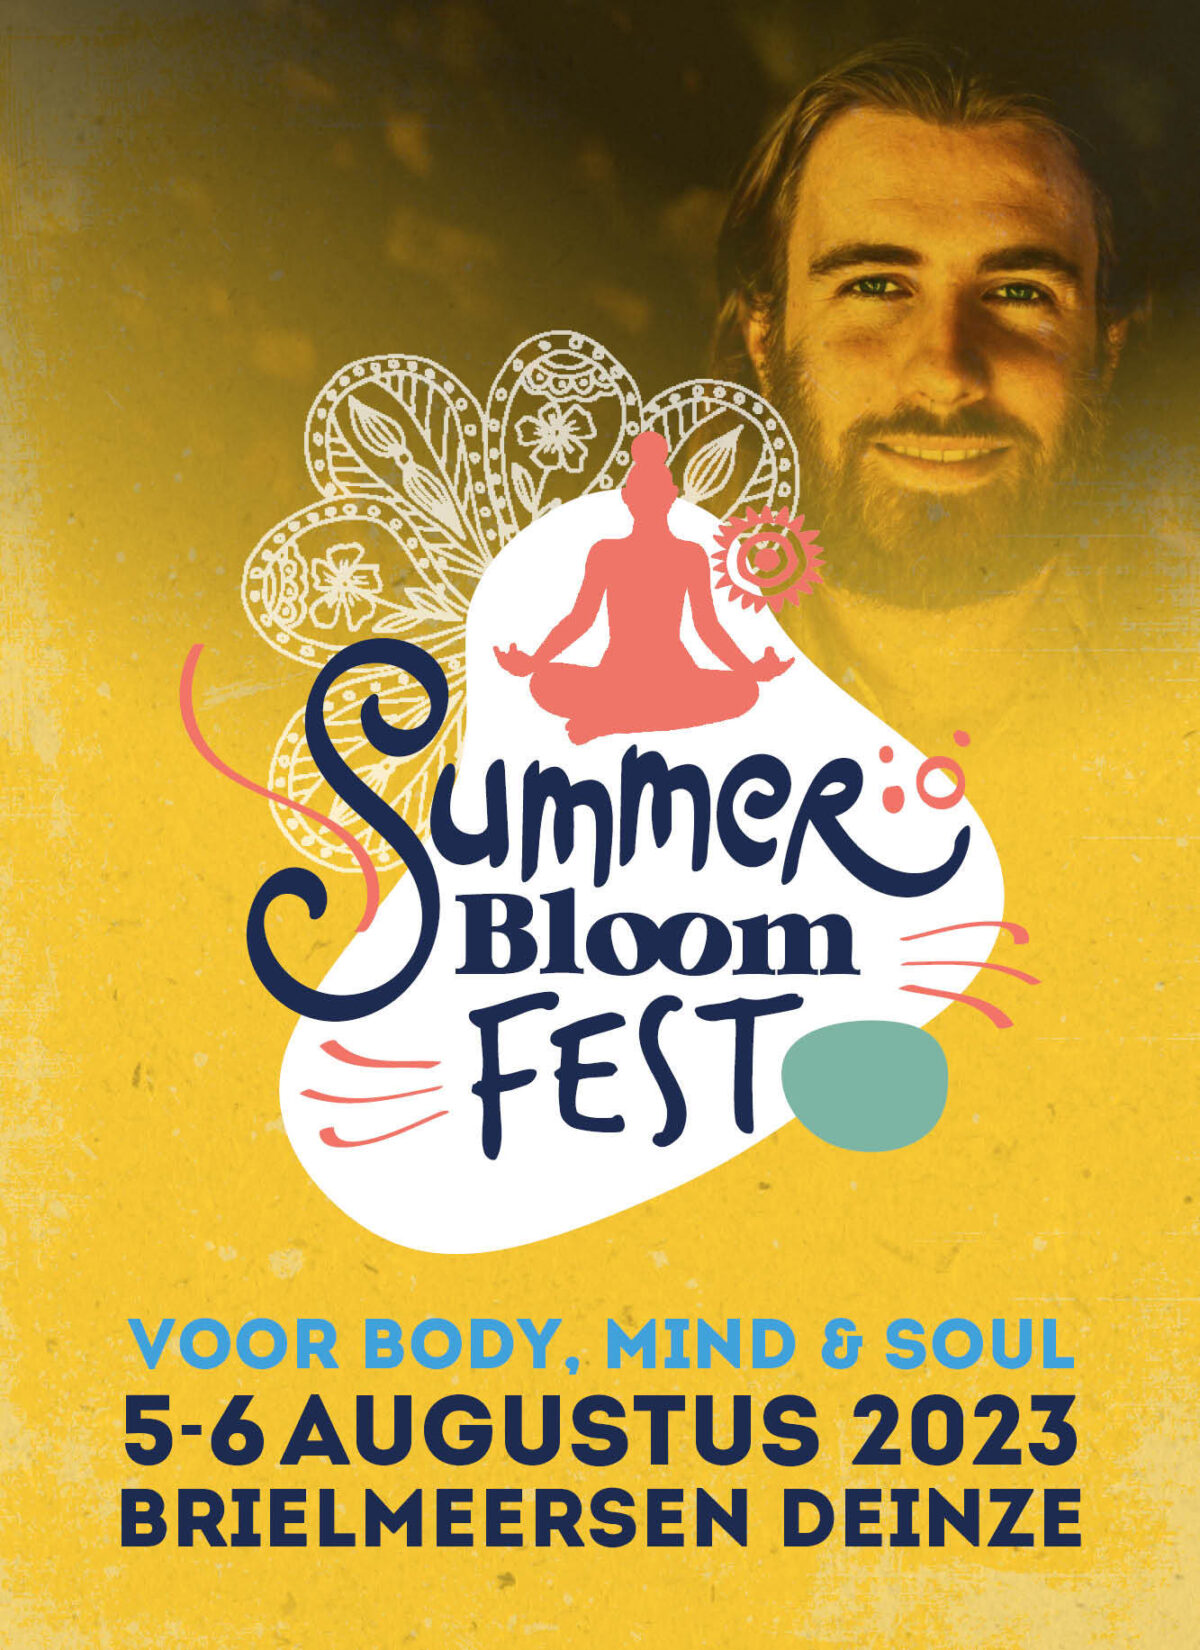 Bloom summer fest vierkant met swami rechtopstaand